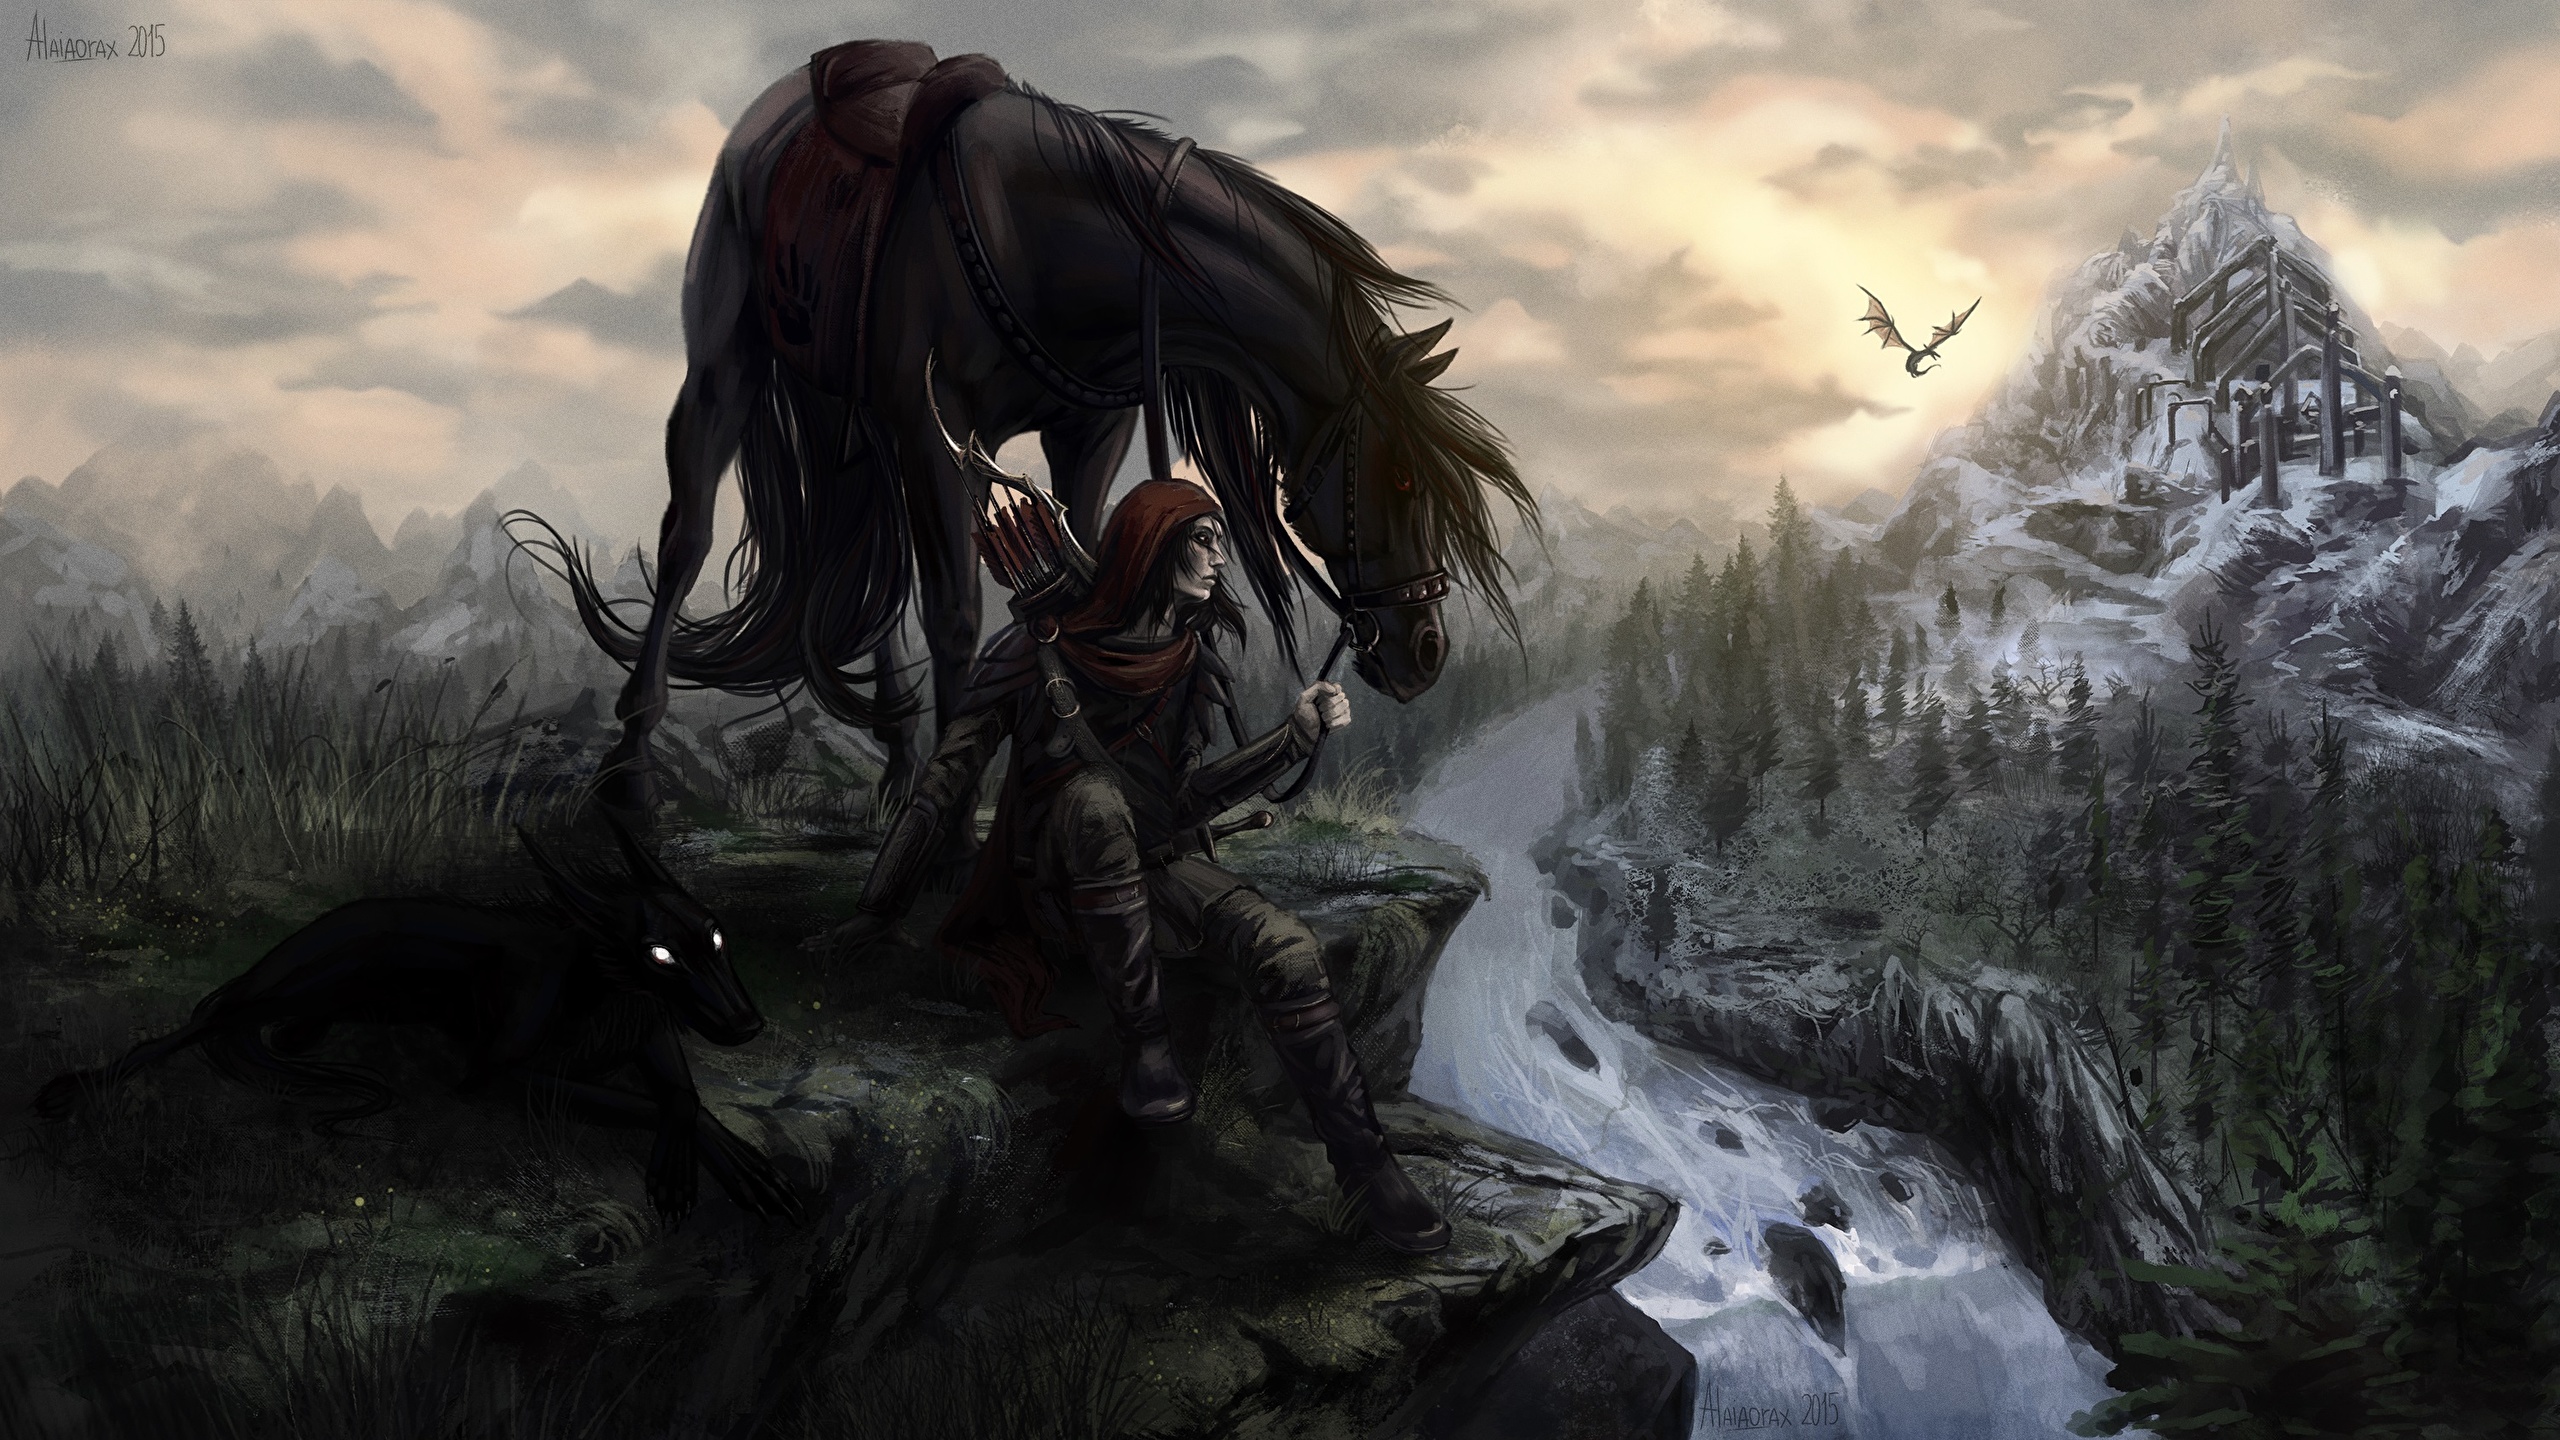 Papeis de parede 2560x1440 The Elder Scrolls V: Skyrim Cavalo Tenegrin Jogos  Fantasia baixar imagens